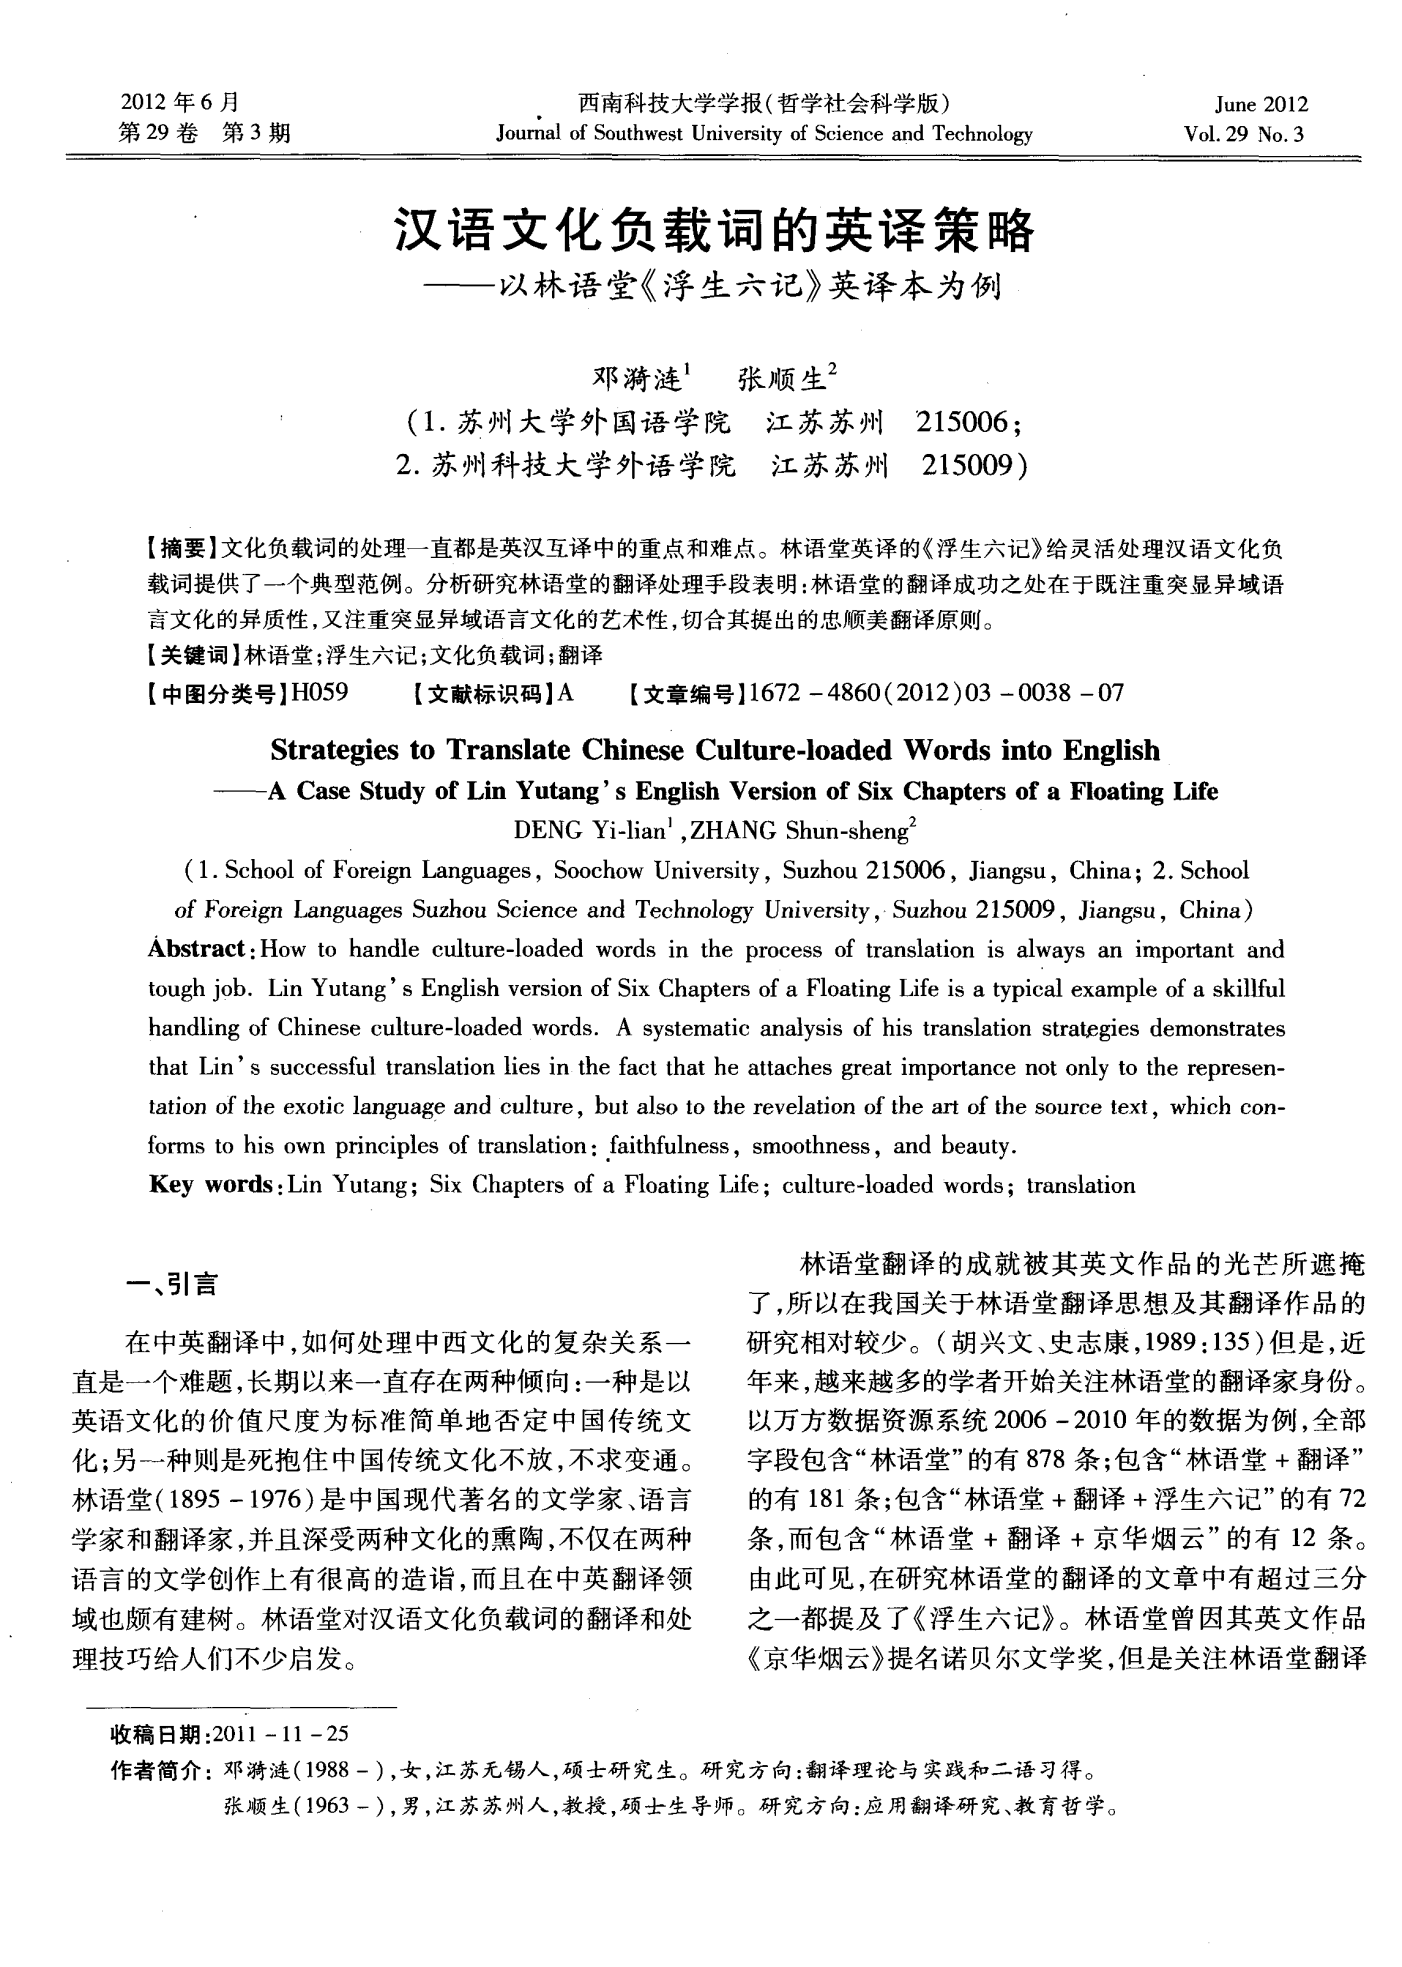 汉语文化负载词的英译策略——以林语堂《浮生六记》英译本为例